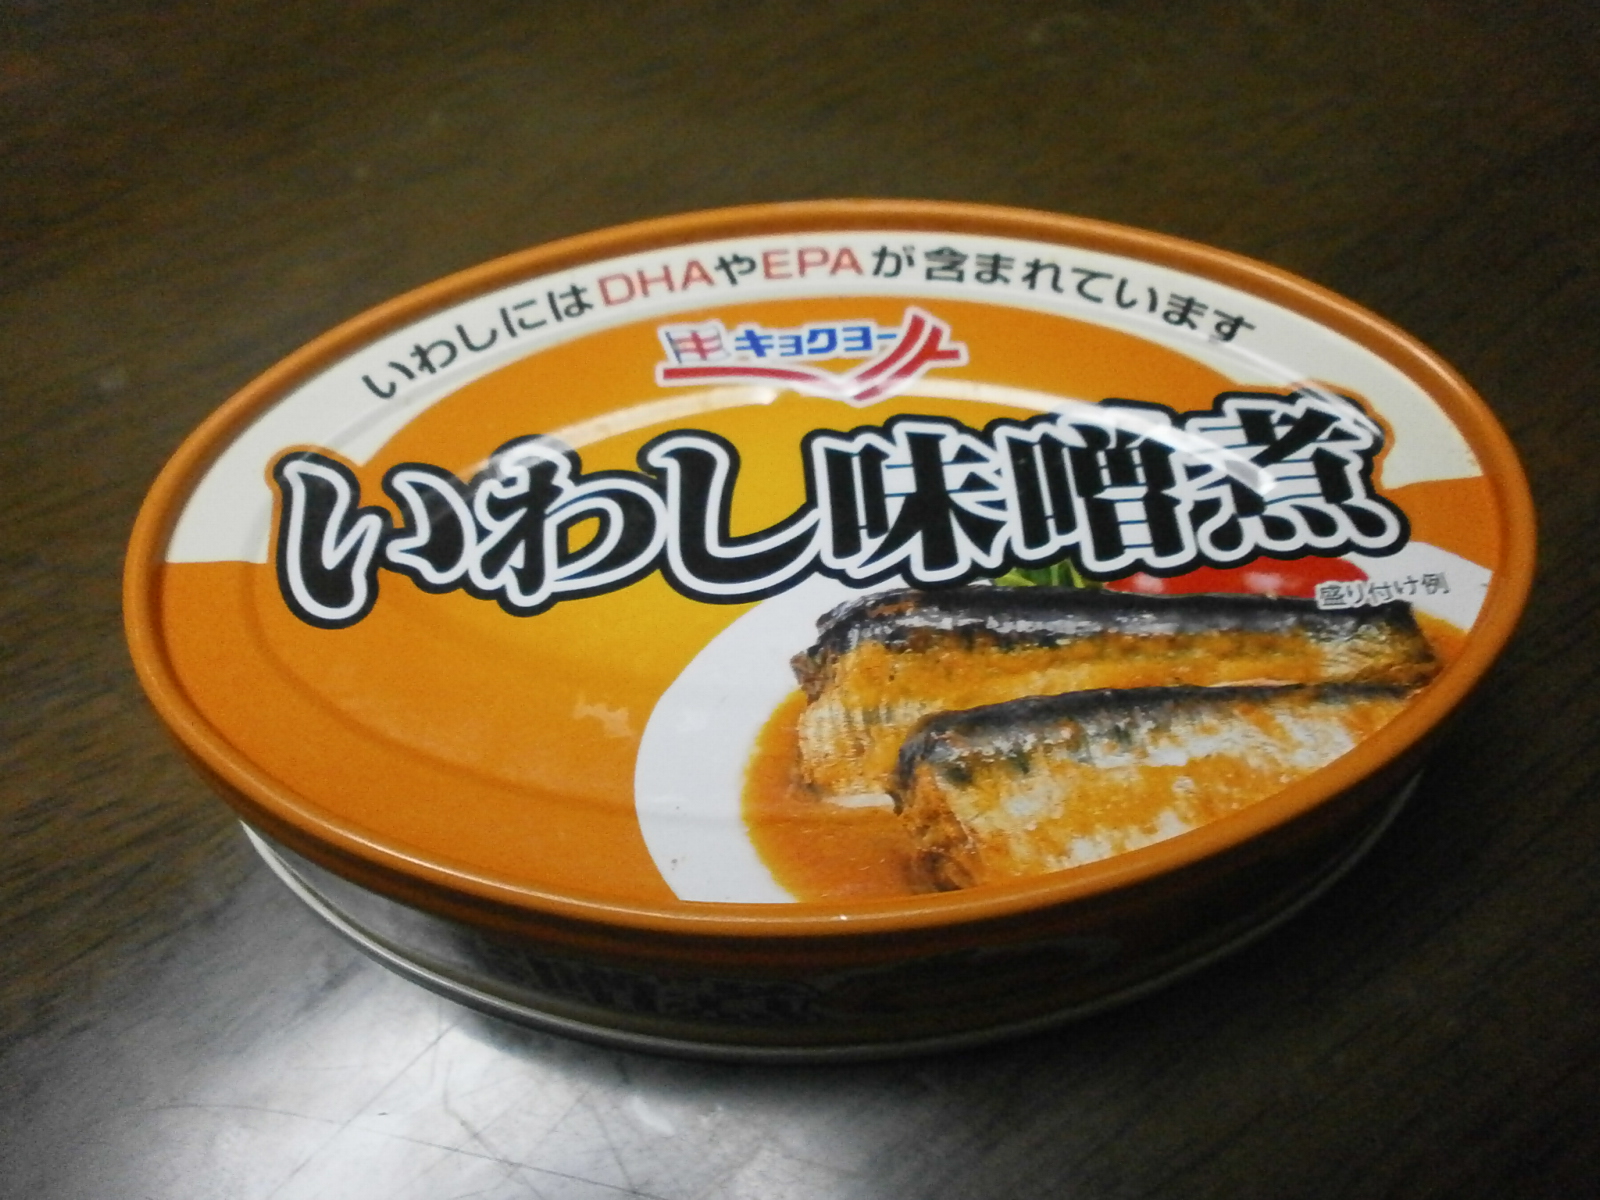 Miso sardines (Kyokuyo)